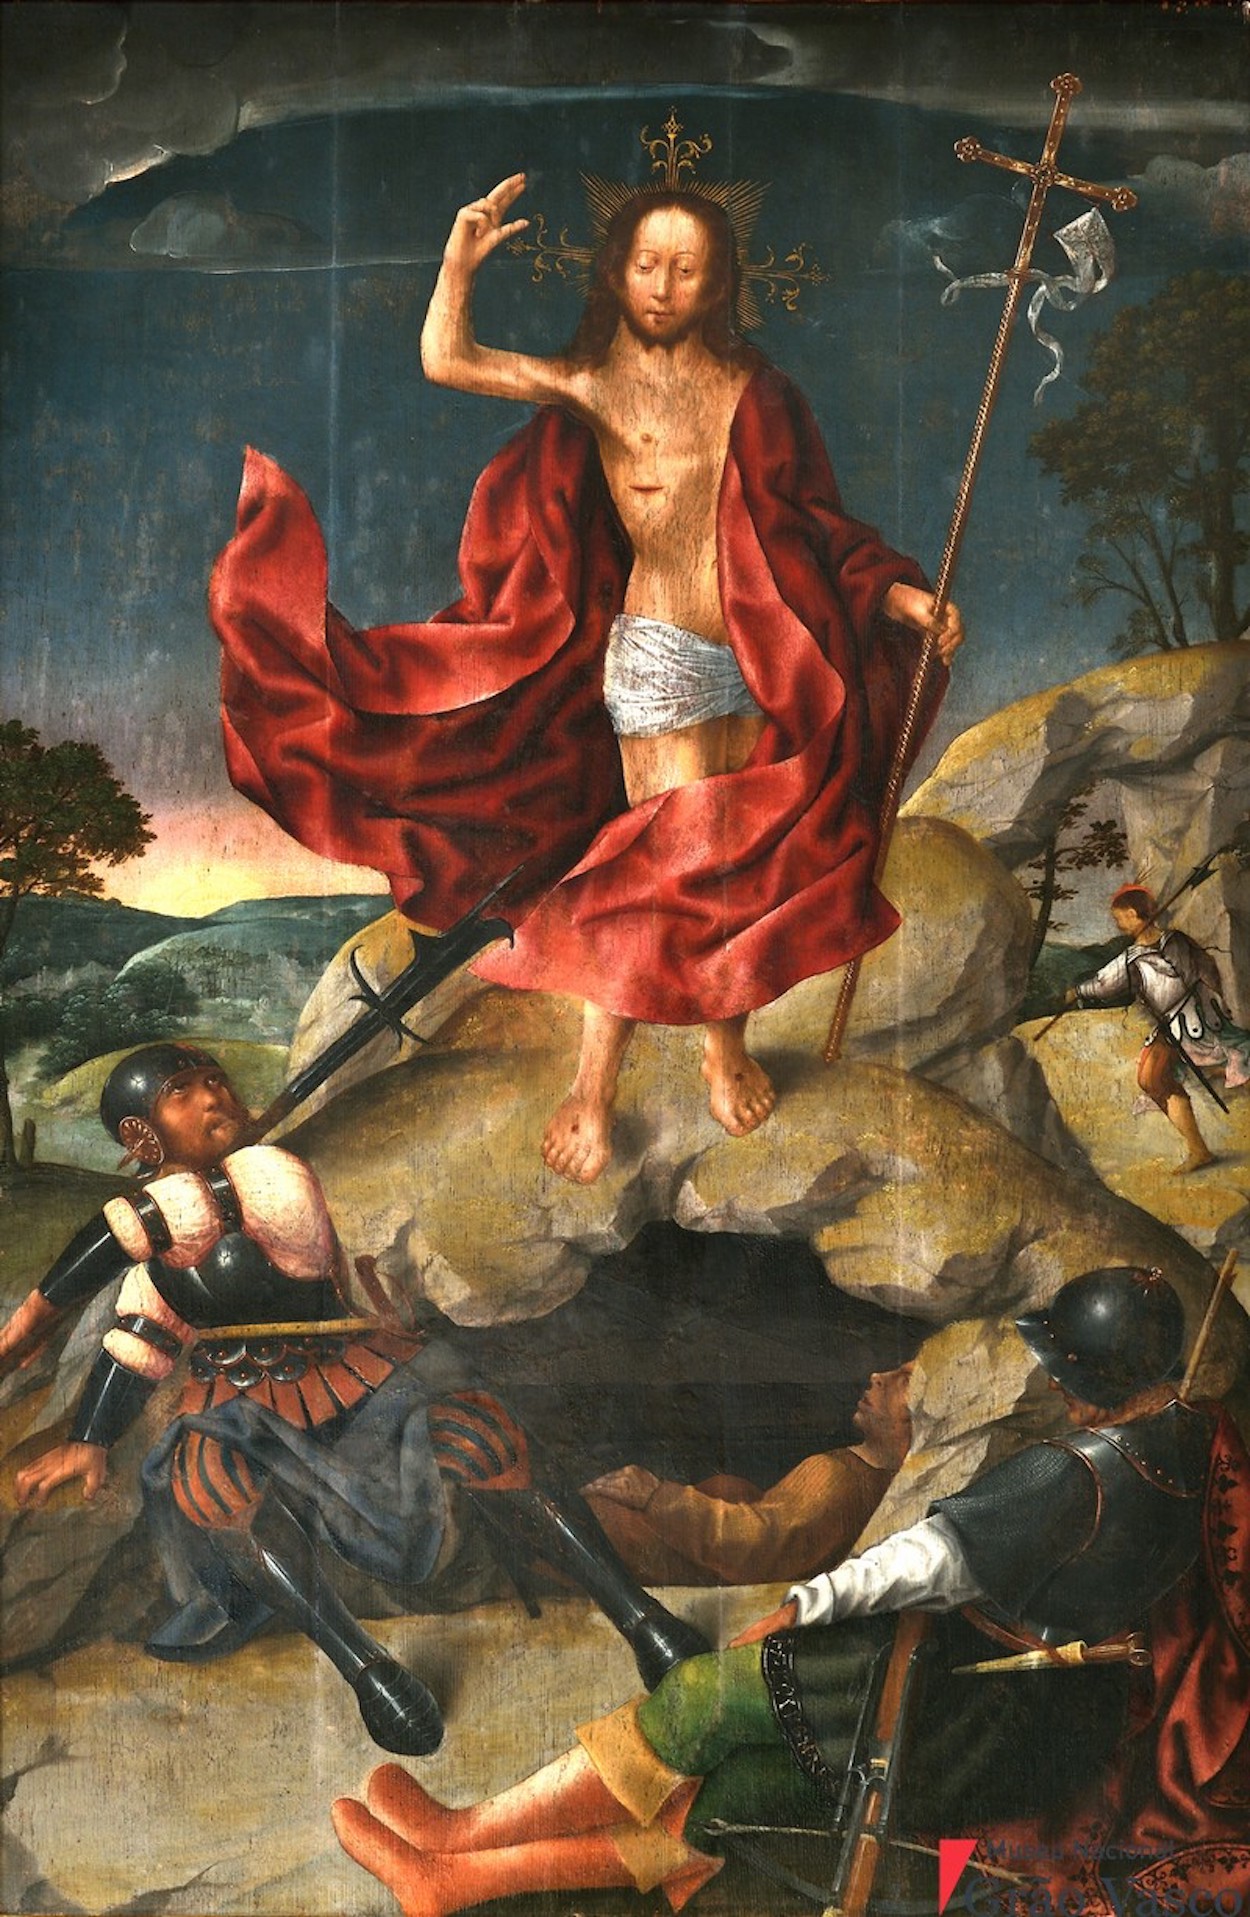 Resurrection by Grão Vasco - 1501-1506 - 132 cm x 82 cm Grâo Vasco Nacional Museum, Viseu, Portugal